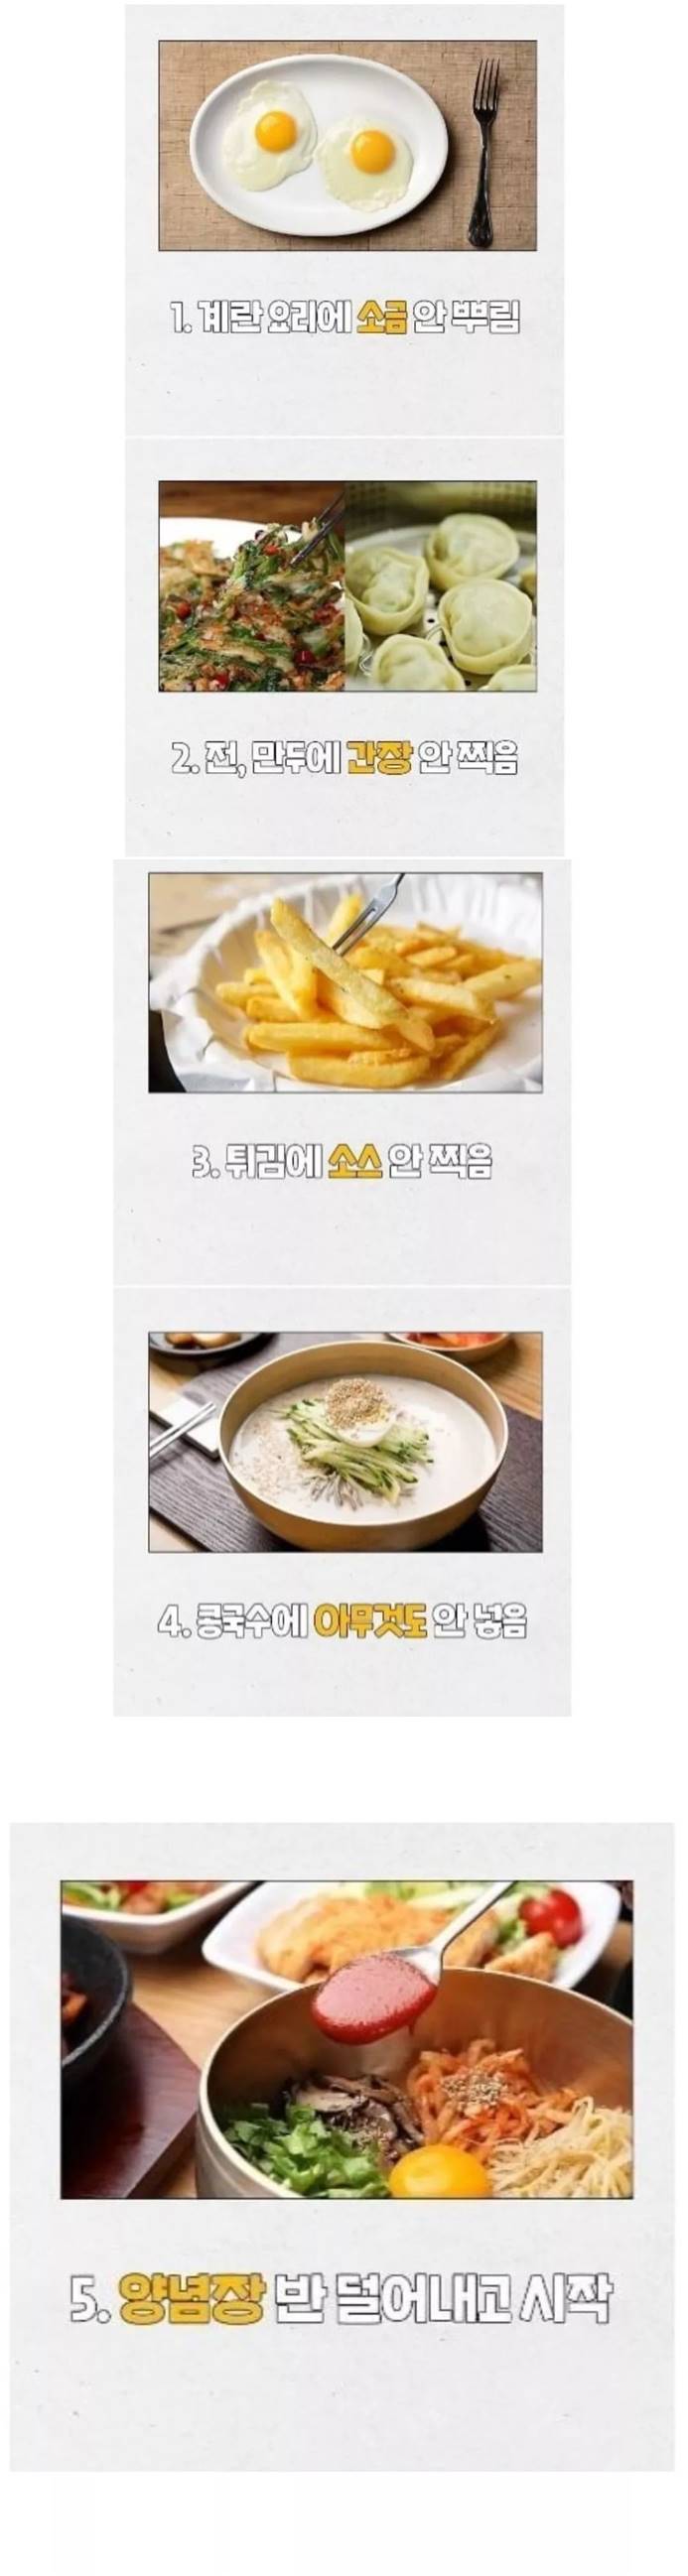 한국인들 사이에서 제법 있다는 식성.jpg